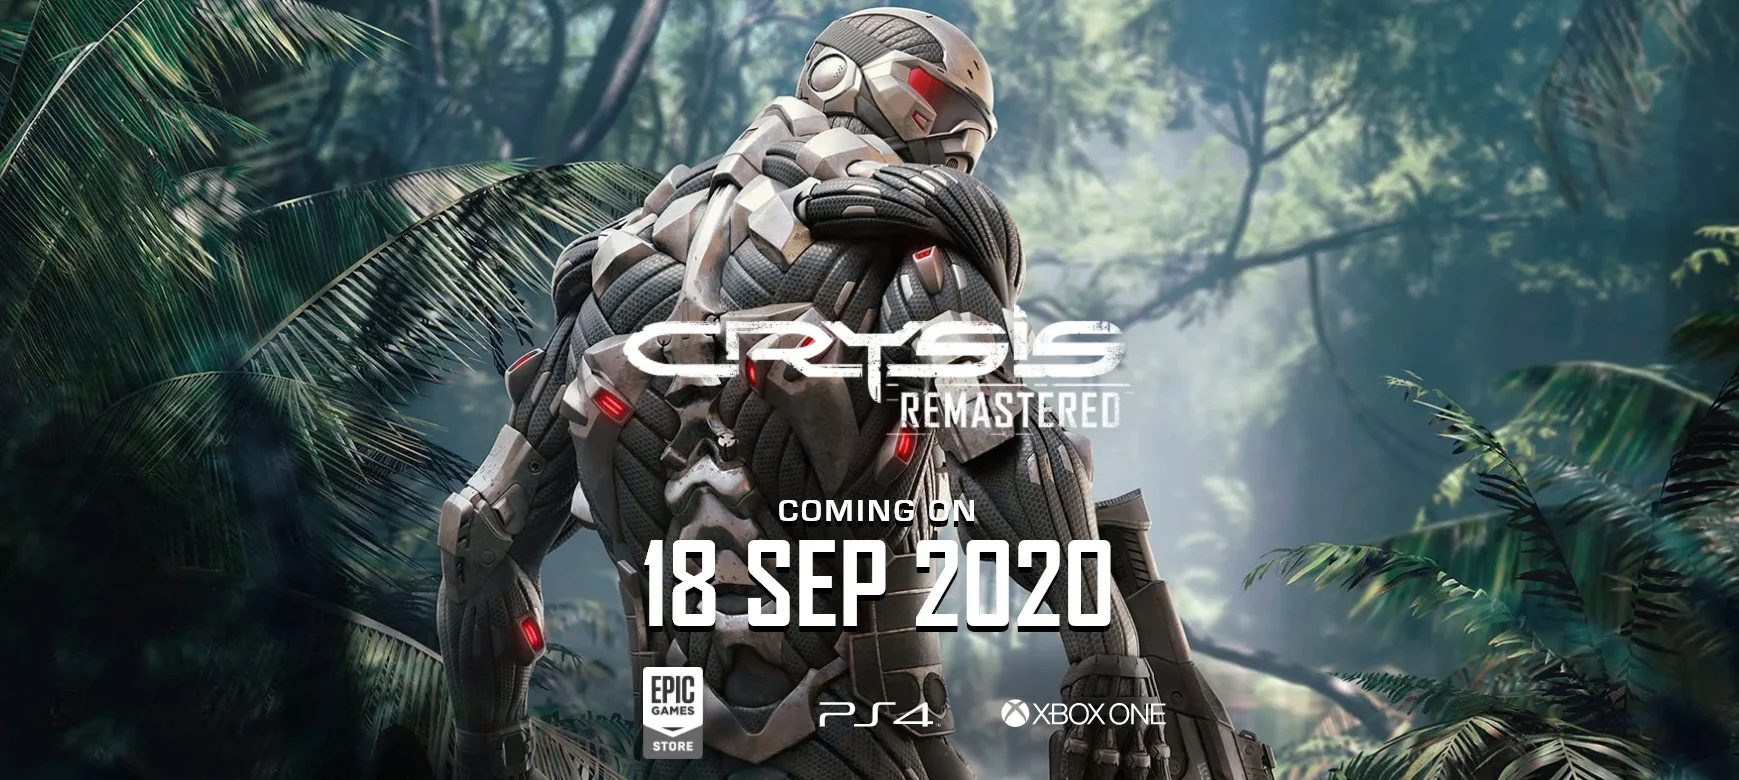 Ремастер Crysis выйдет на PC, PS4 и Xbox One 18 сентября - фото 1